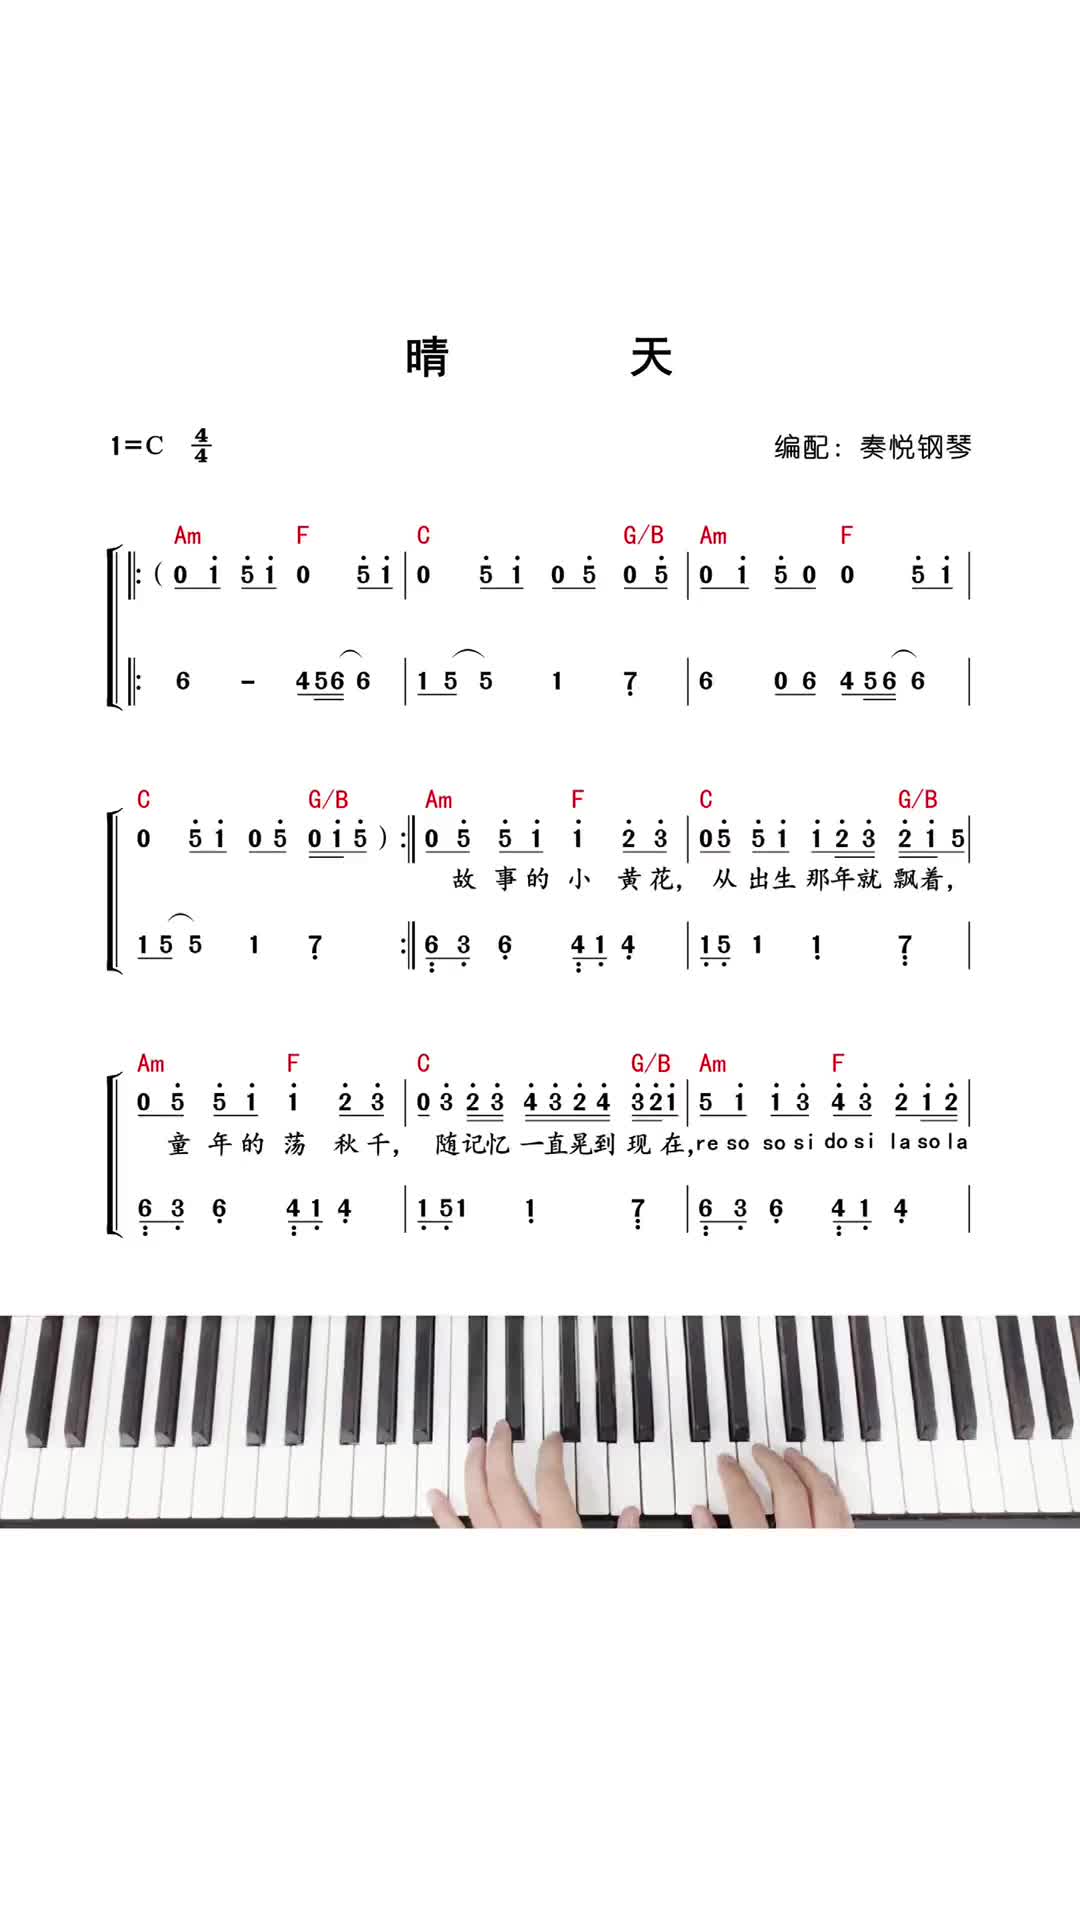 晴天钢琴谱简易版数字图片